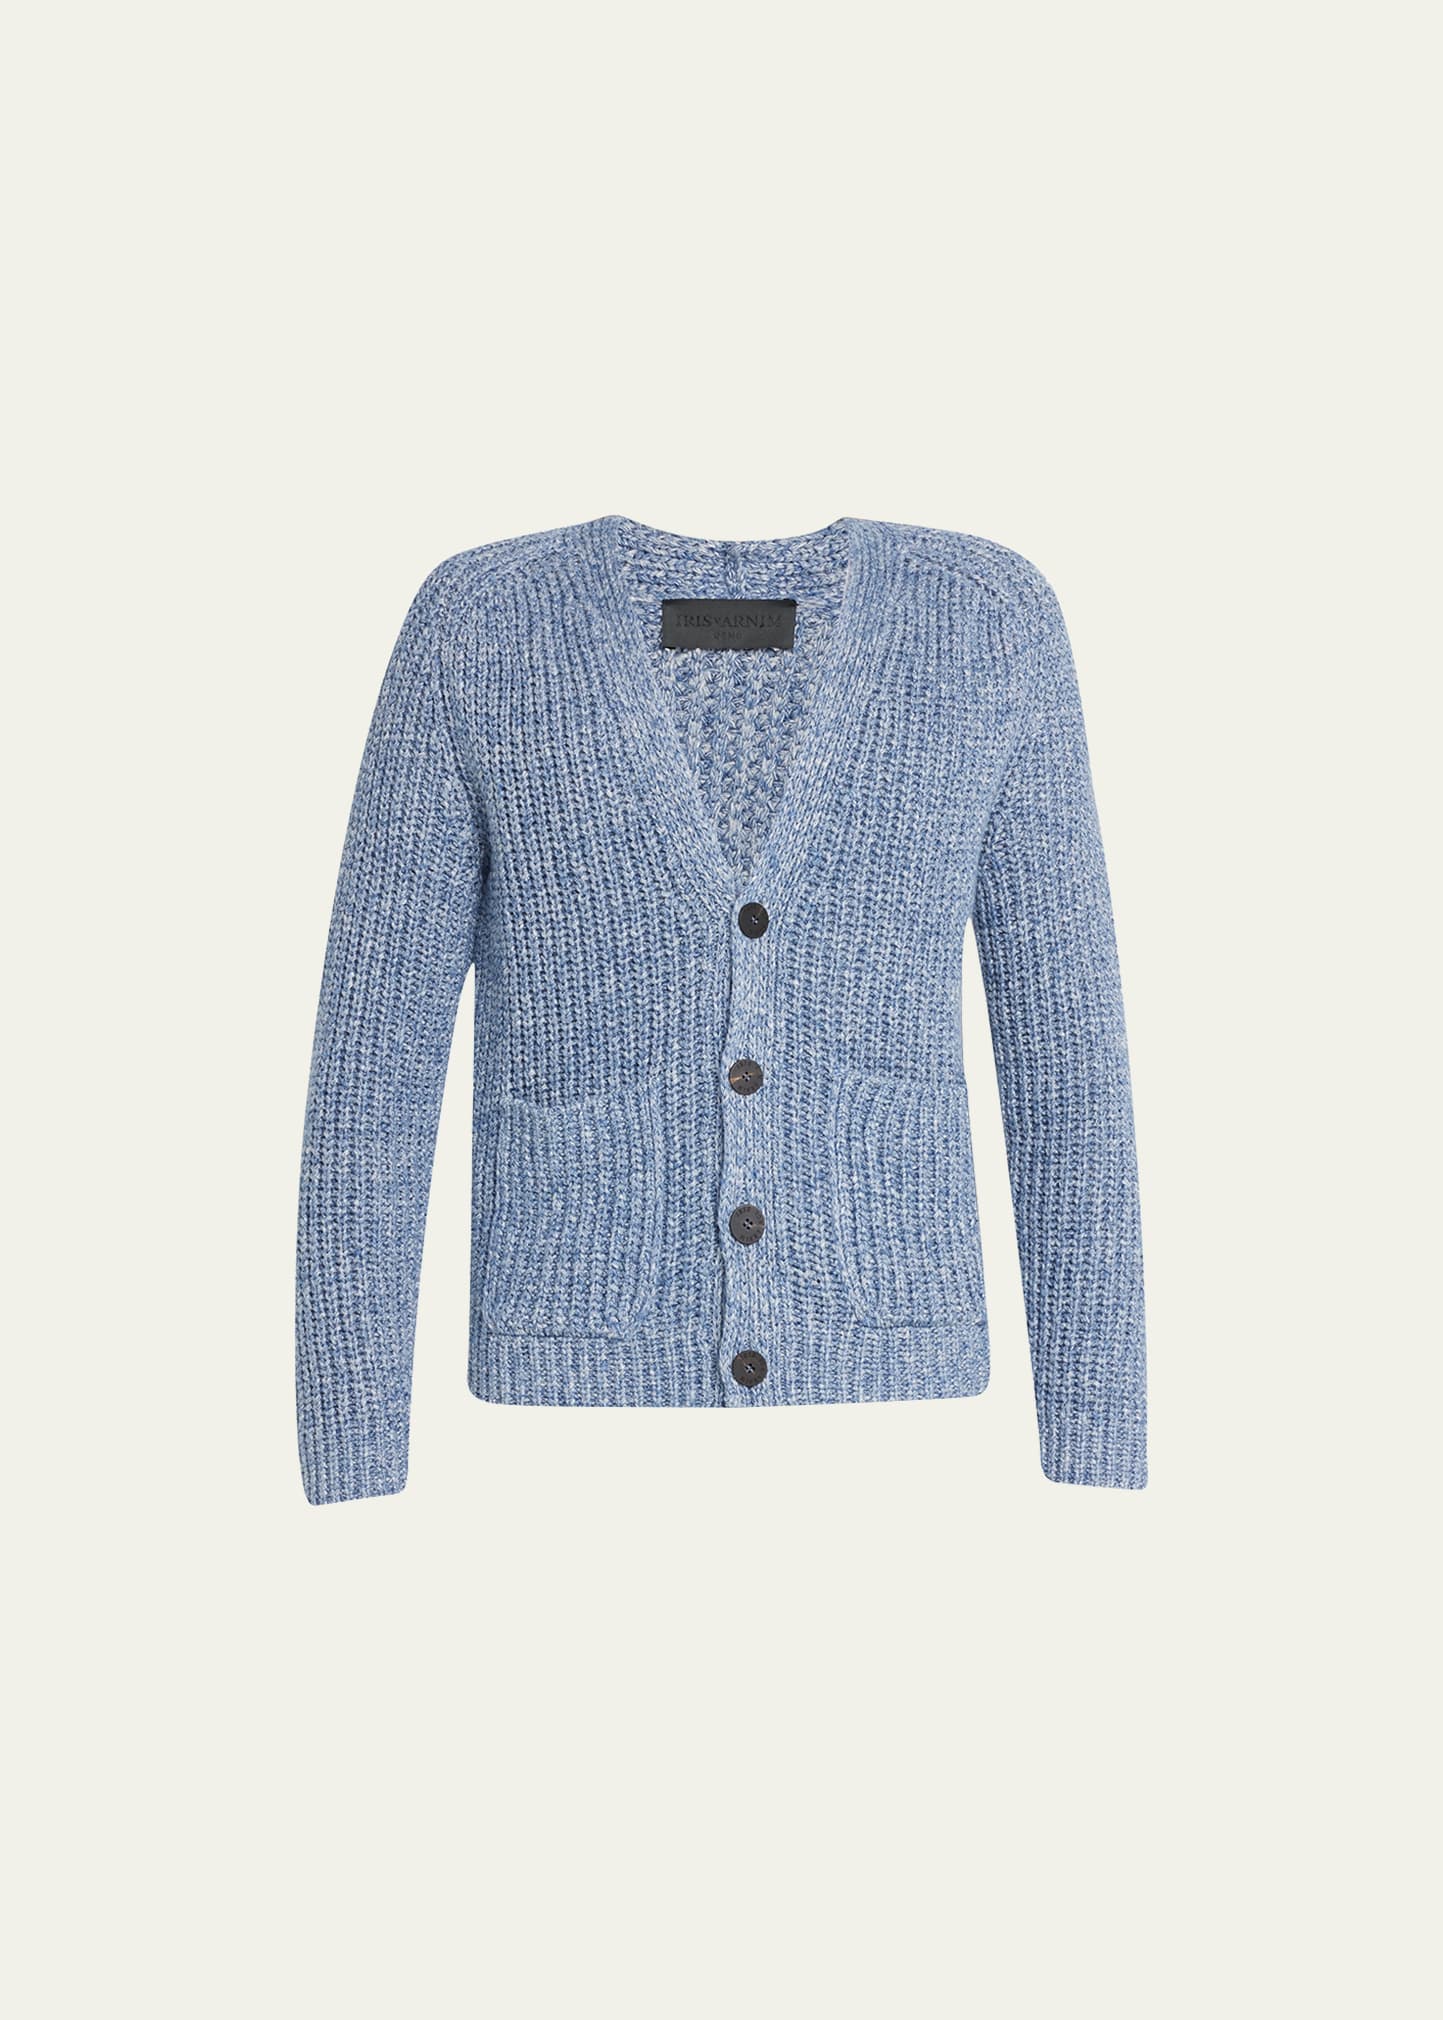 Iris Von Arnim Men's Silk-Linen Knit Cardigan Sweater